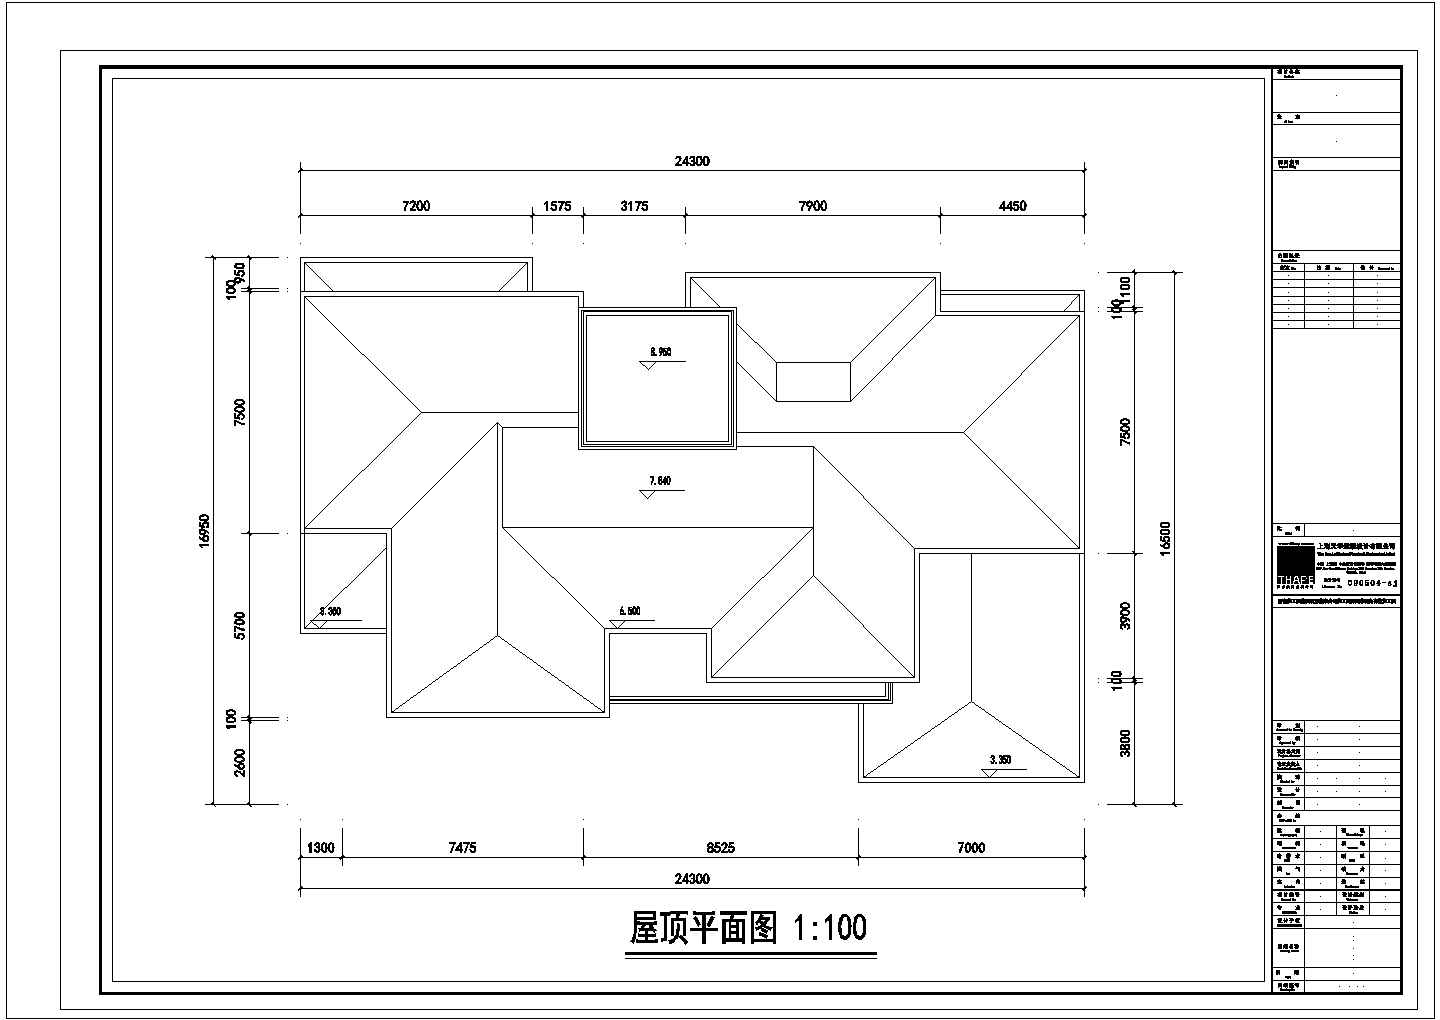 三亚市丽景阁别墅区2层砖混结构单体海景别墅平面设计CAD图纸